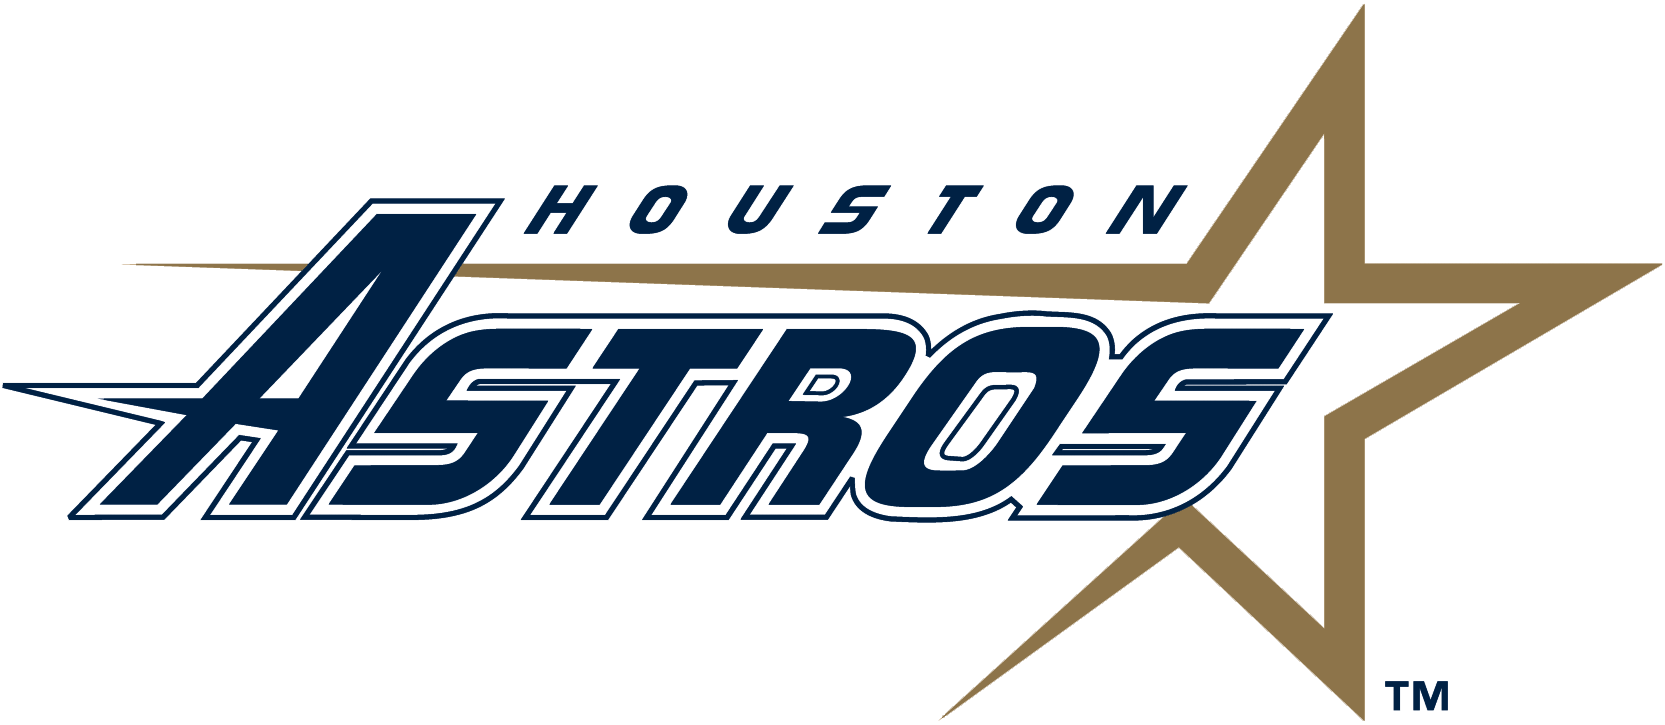 1995 Logo - Houston Astros Primary Logo League (NL) Creamer's